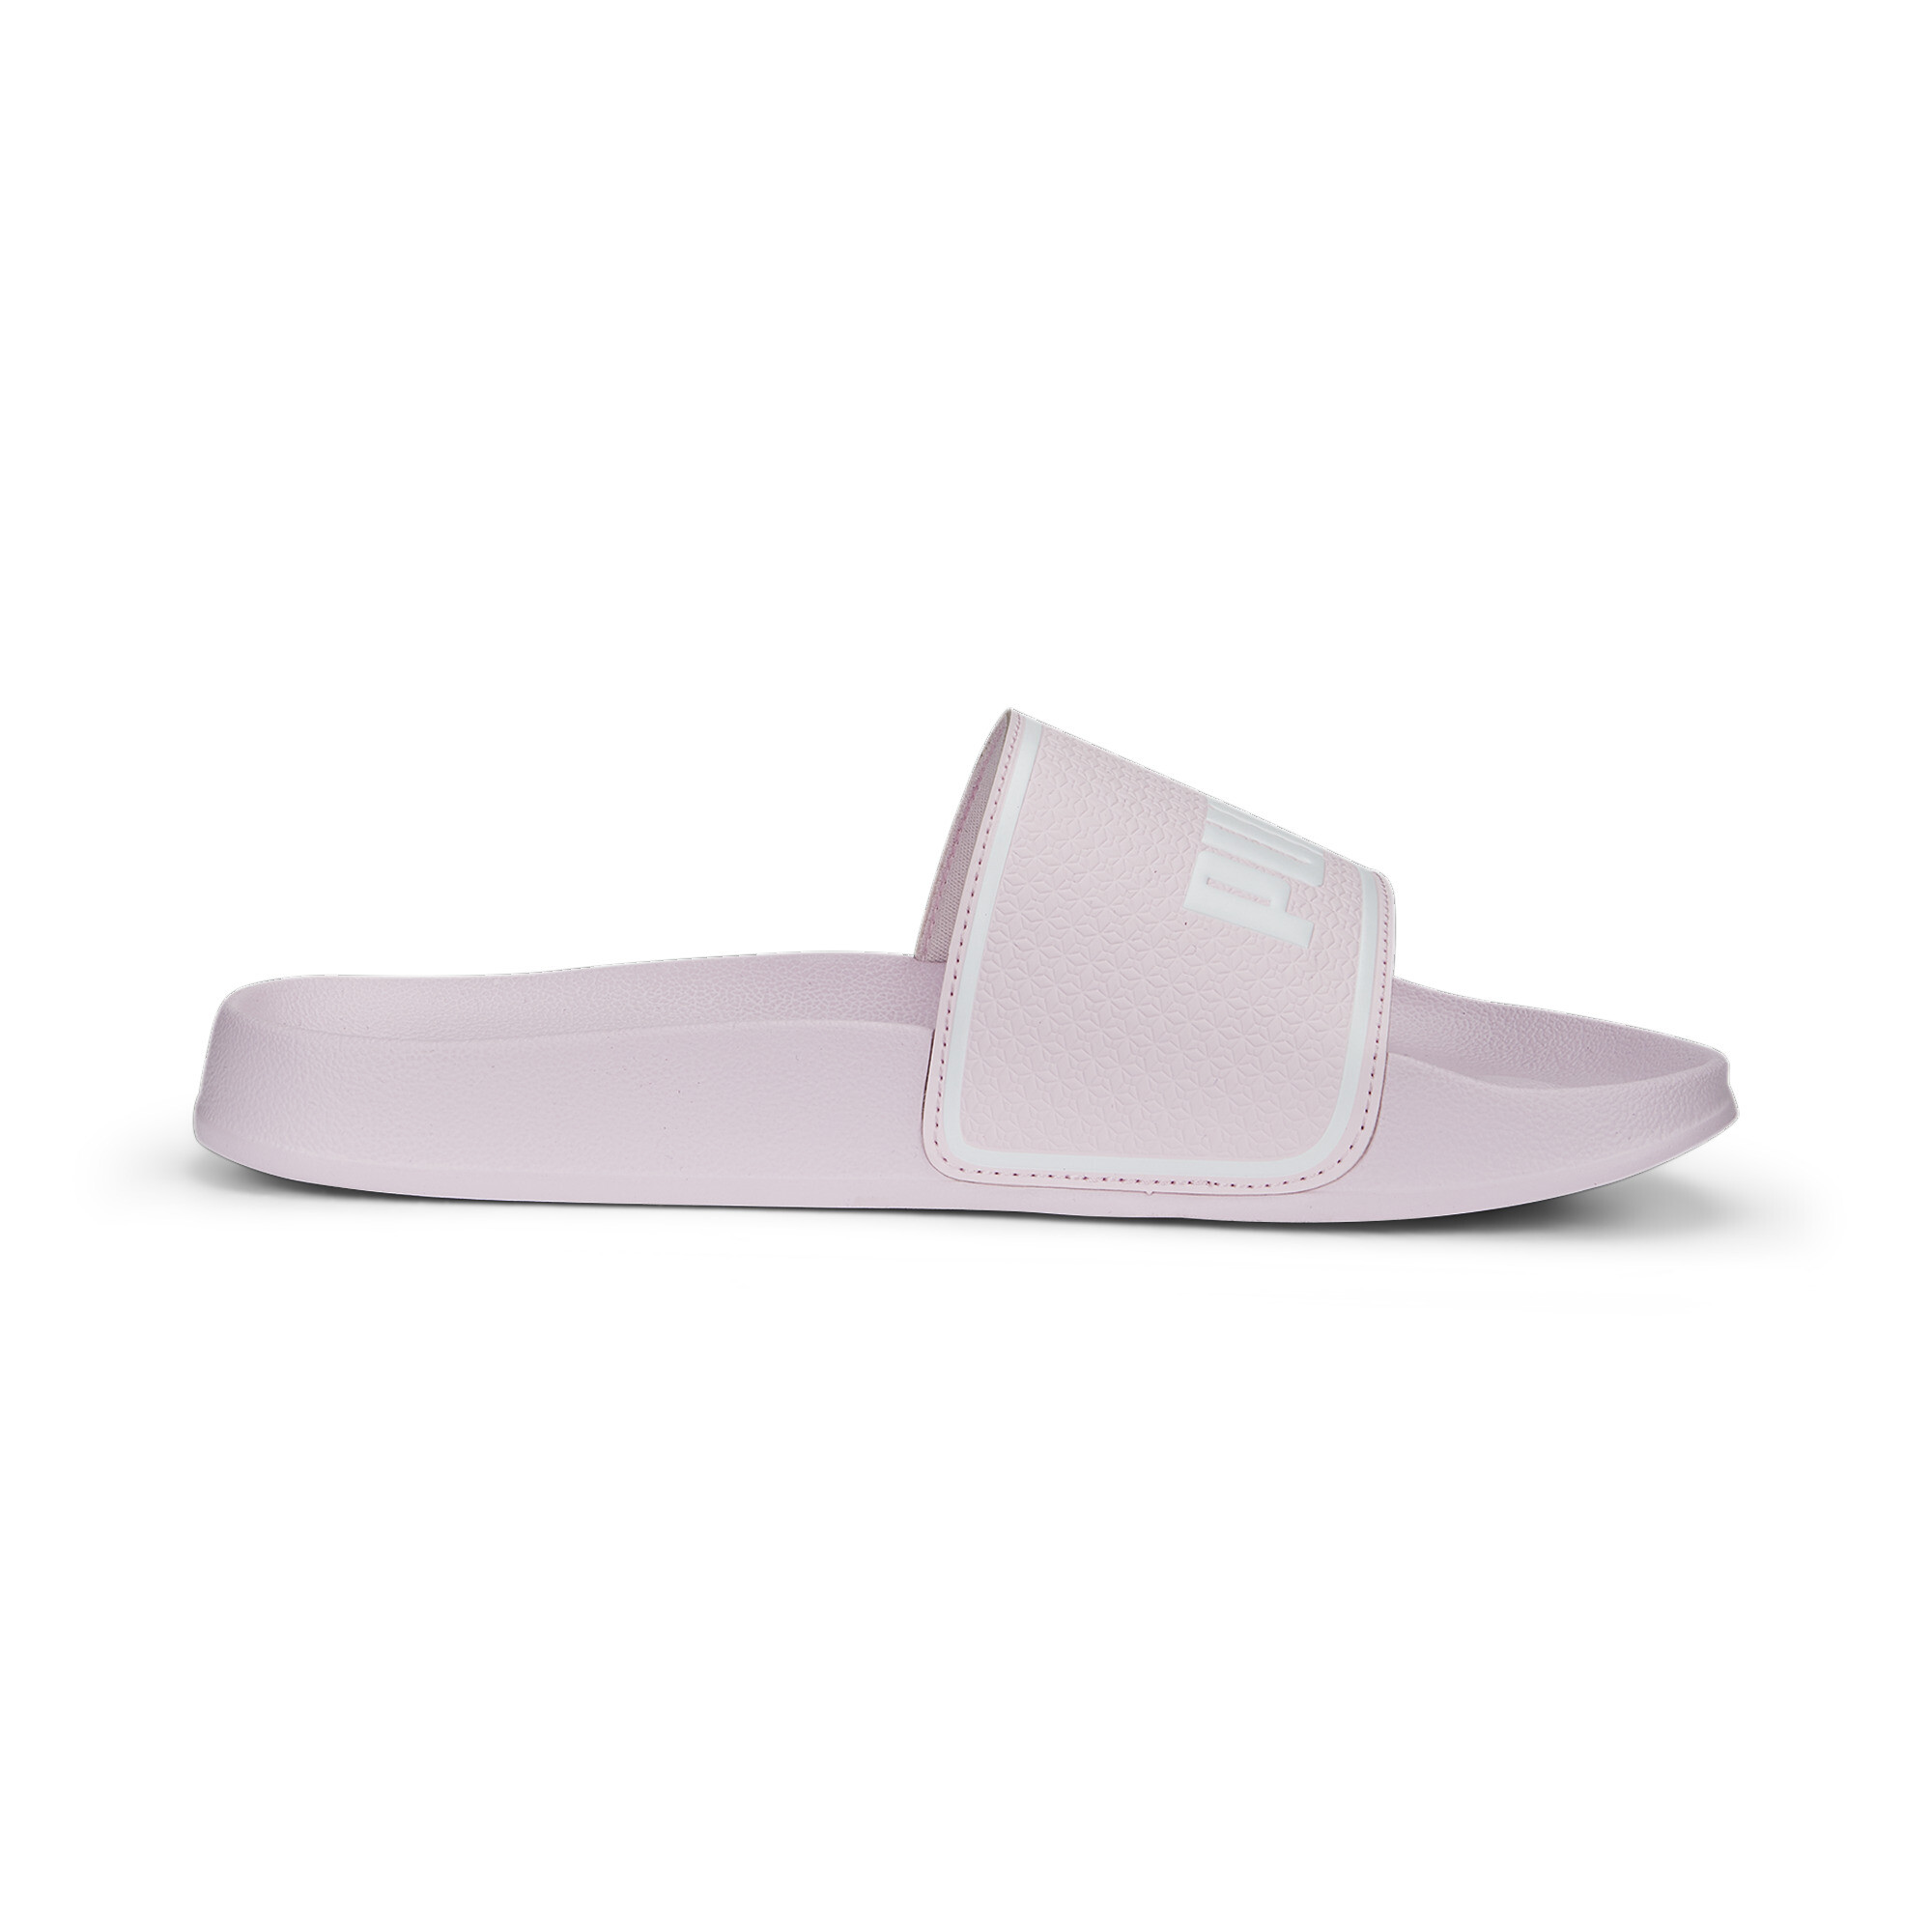 Men's PUMA Leadcat 2.0 Sandals In Pink, Size EU 44.5